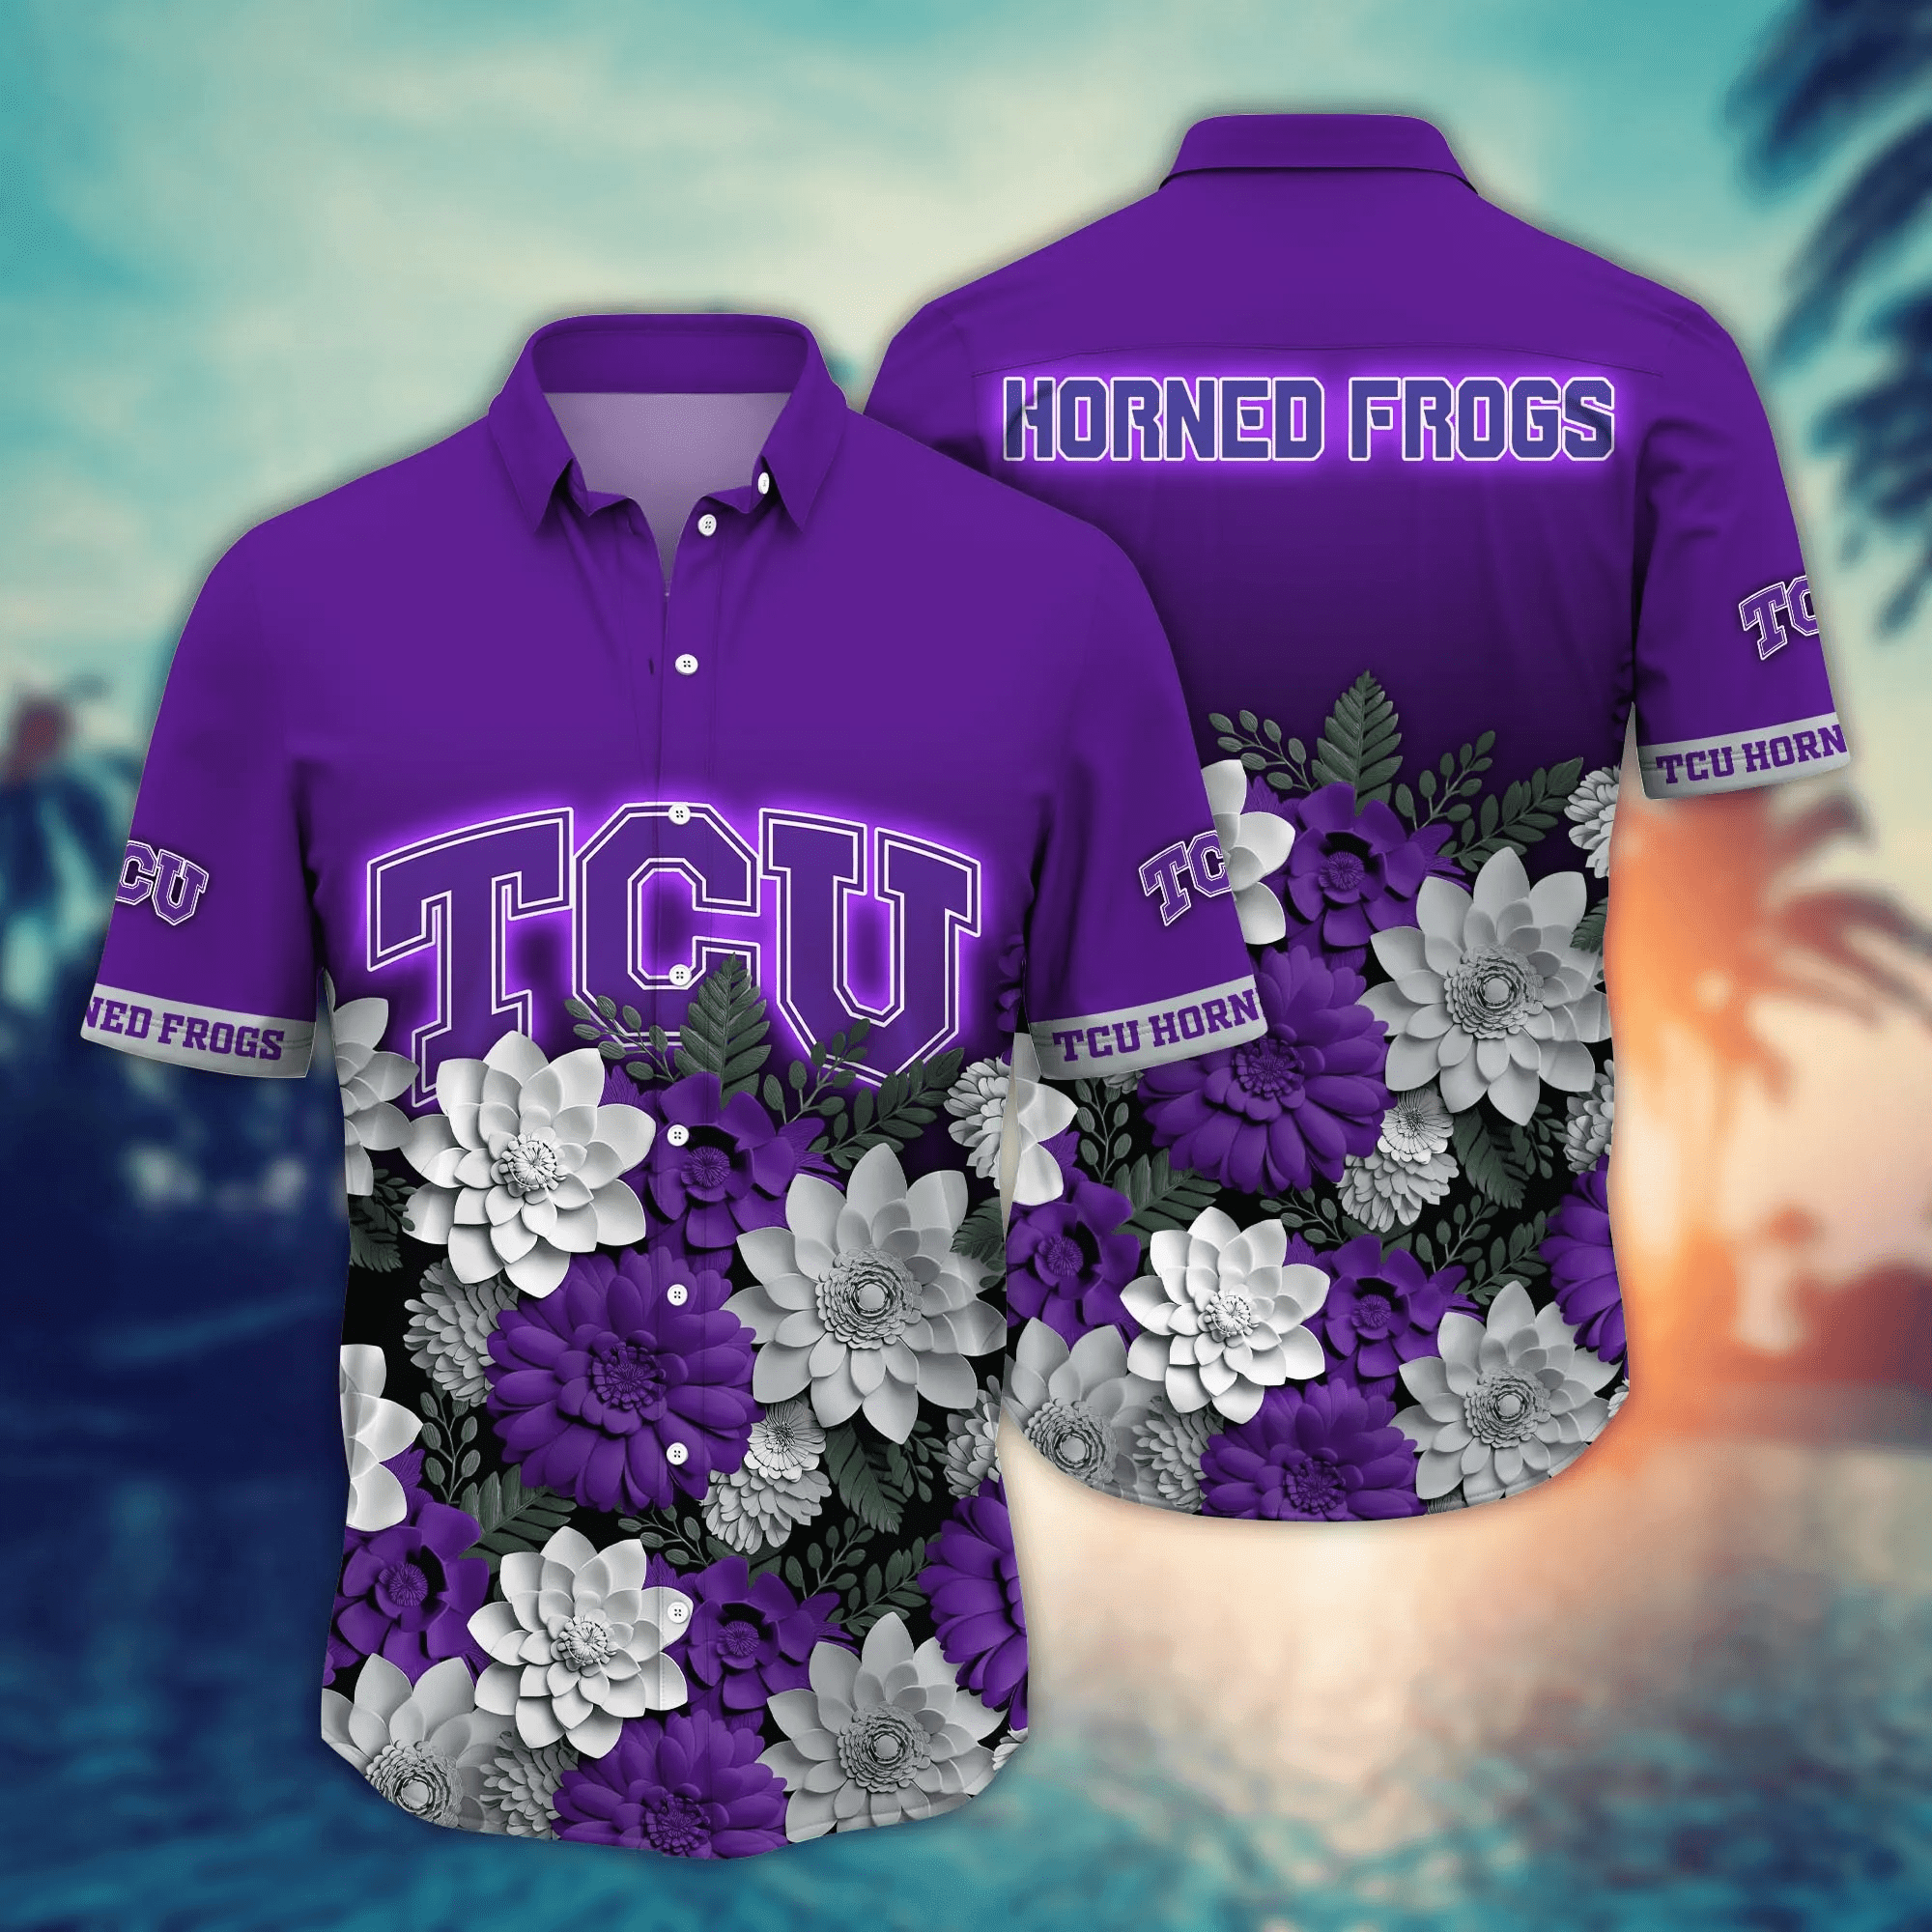 TCU Horned Frogs Flower Hawaii Shirt And T Shirt For Fans, Summer Football Shirts